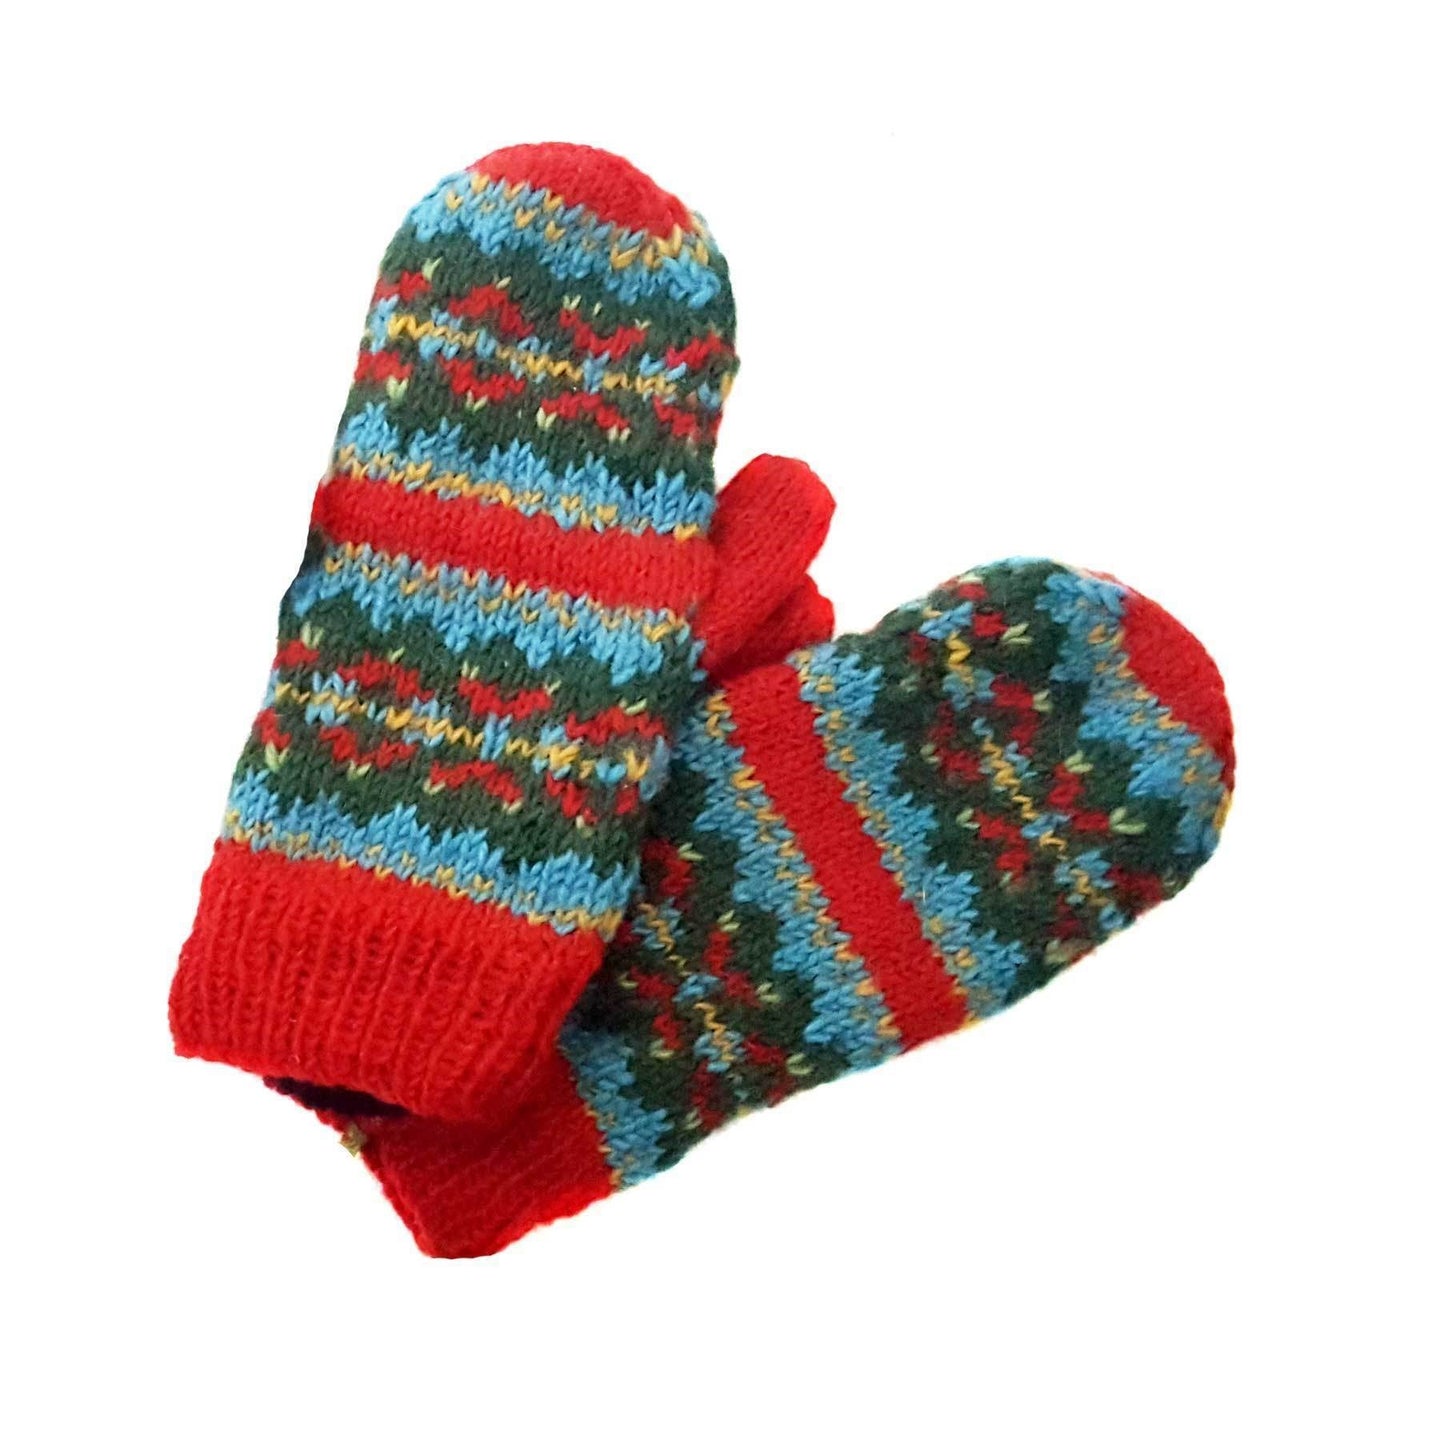 Fair trade artisan made mittens and headbands